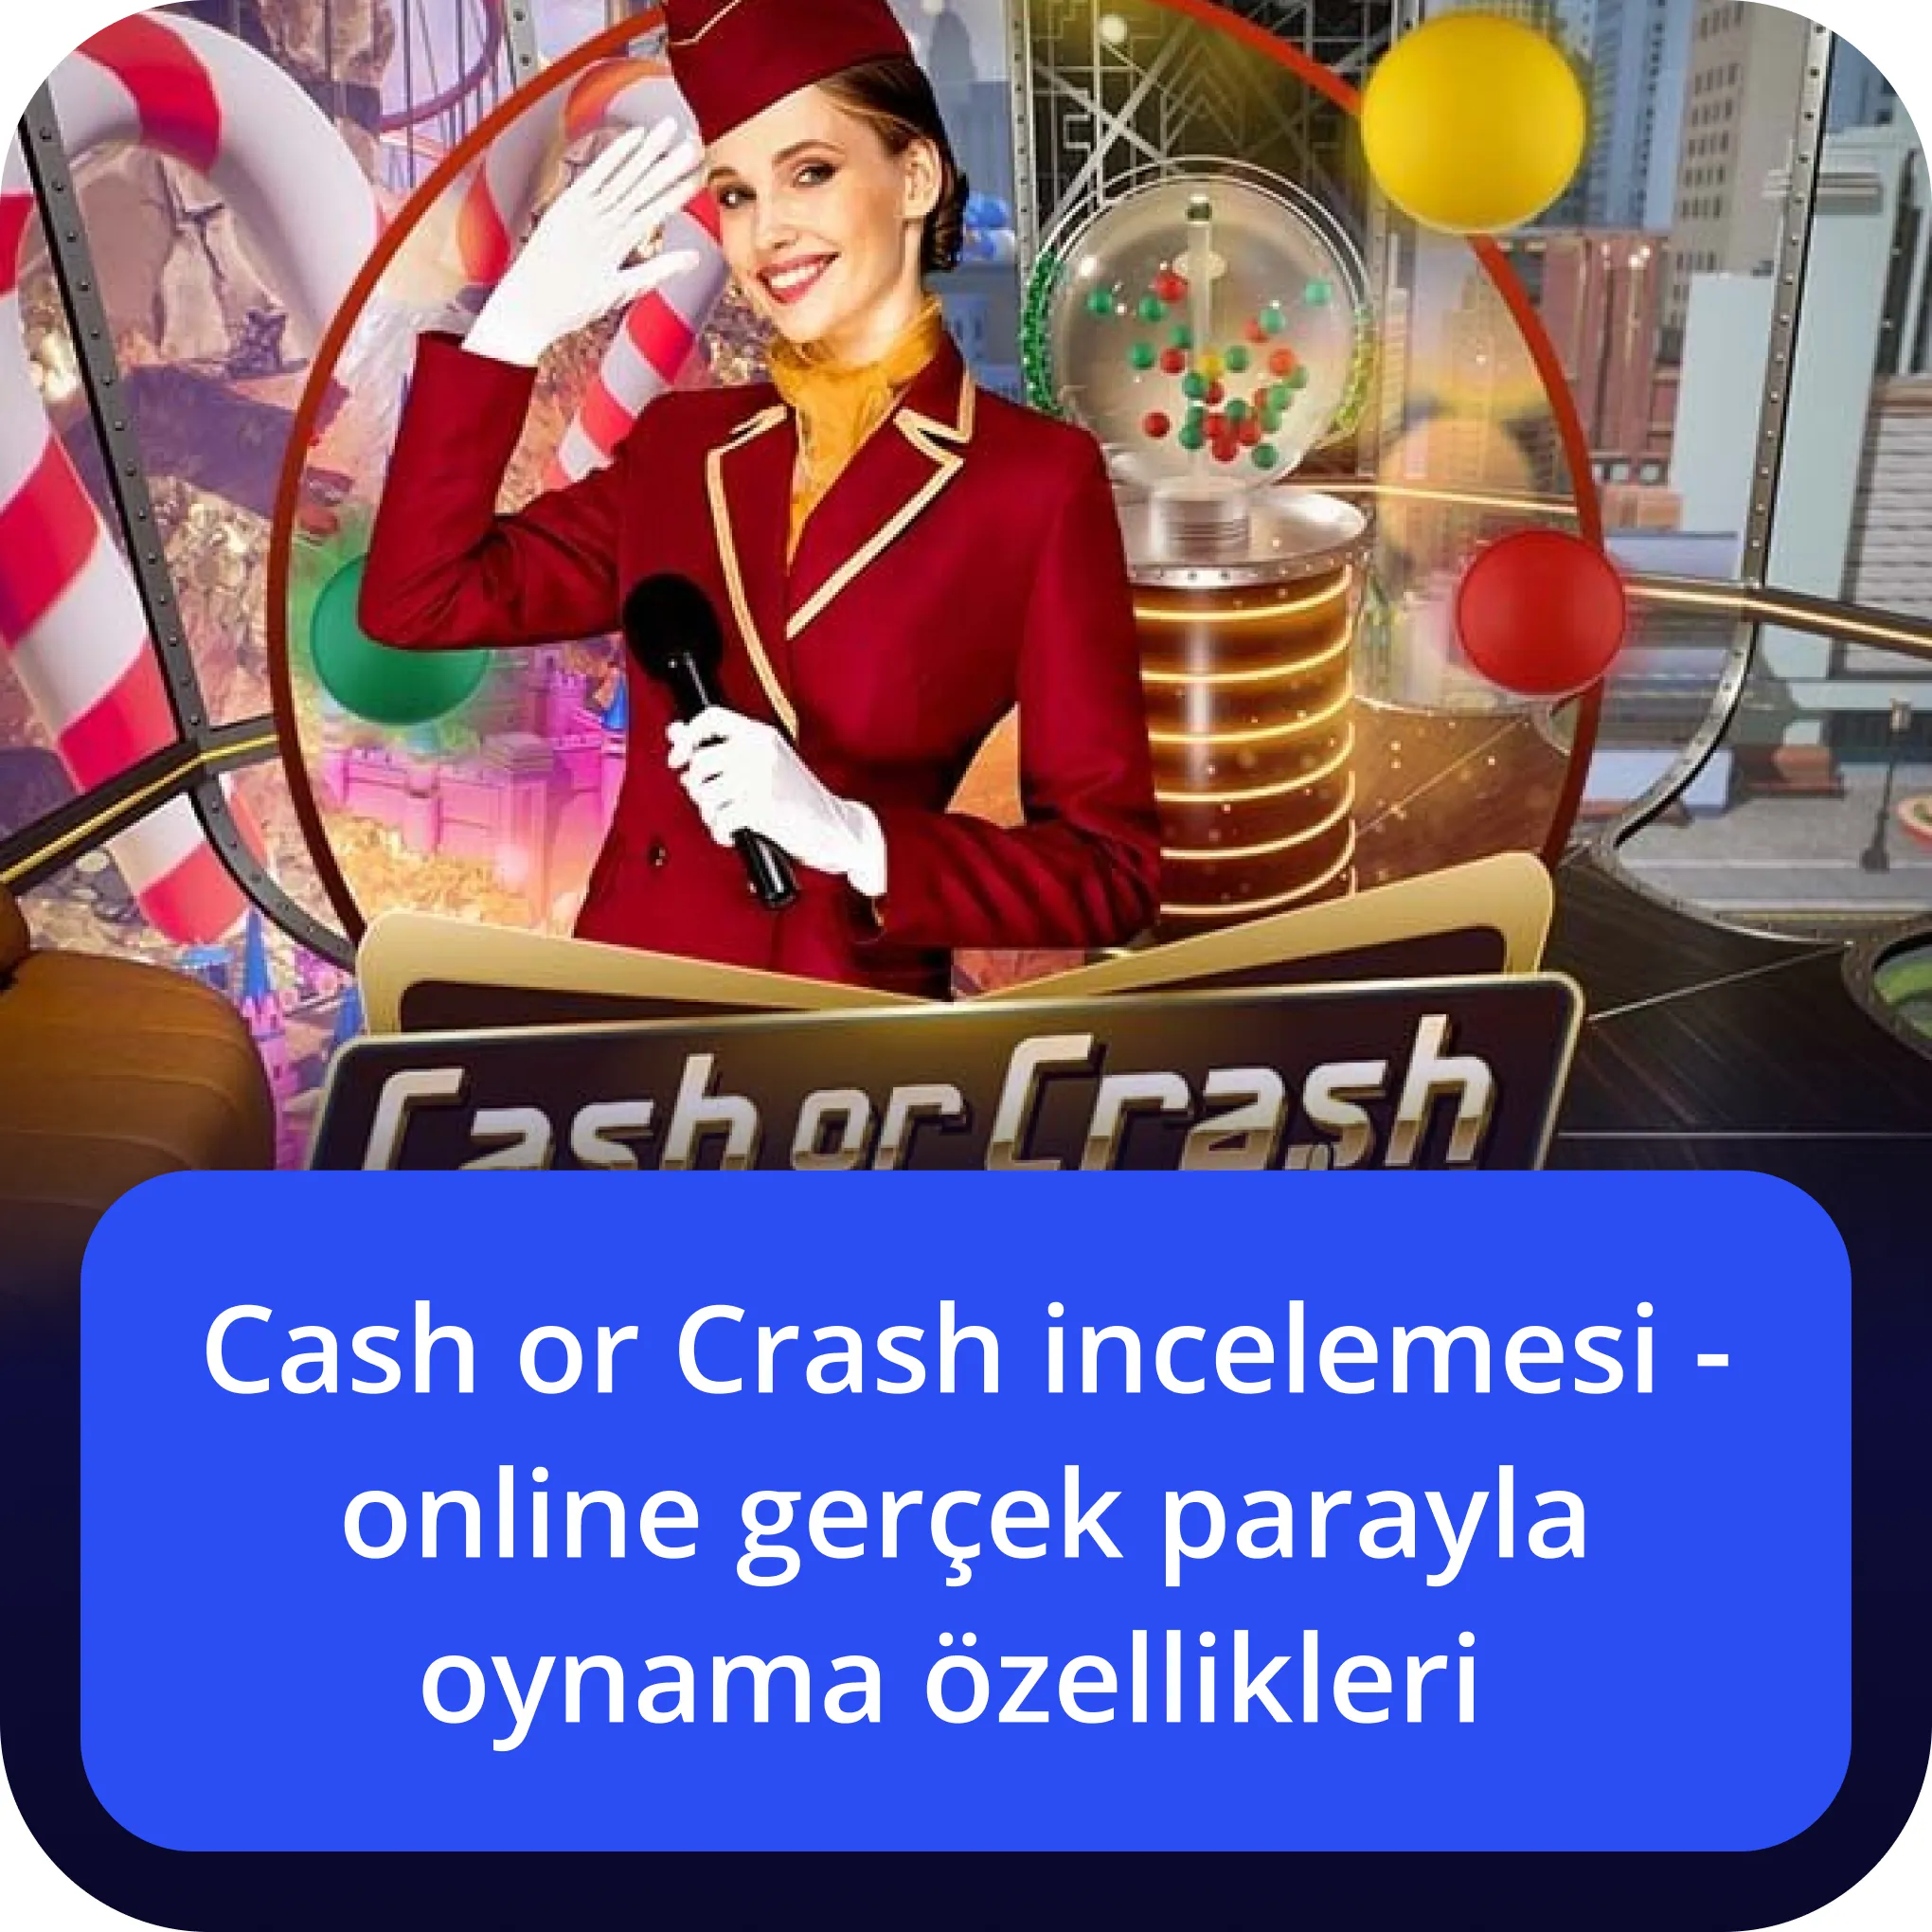 Cash or Crash bonusları